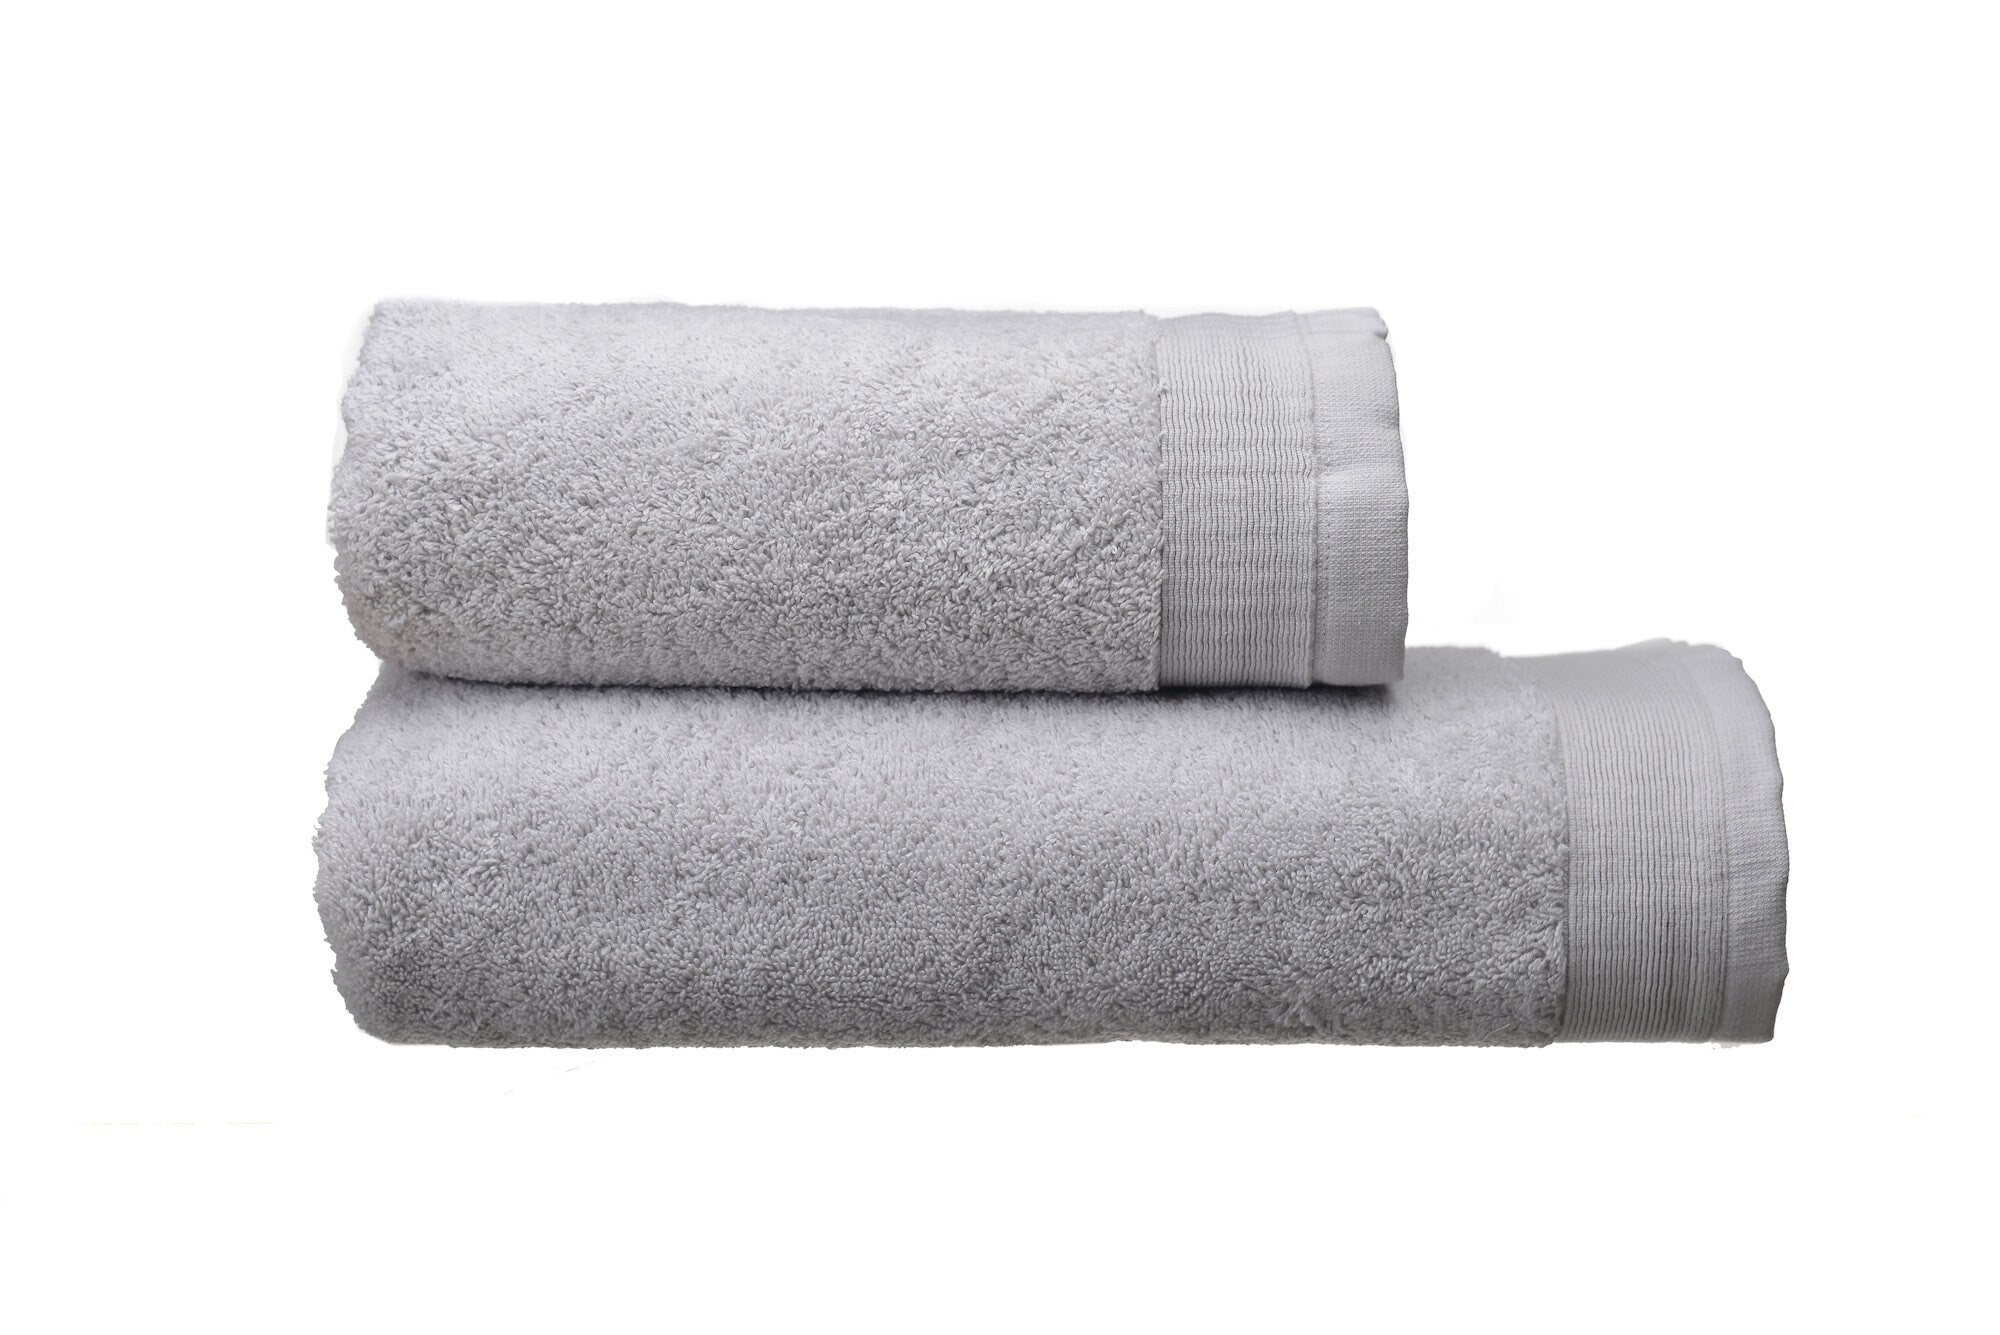 Bath Towel Set, 2 Pieces Set: Bath and Face Towel 600 grm, 100% Natural Terry Cotton, Soft Touch, Super Absorbent